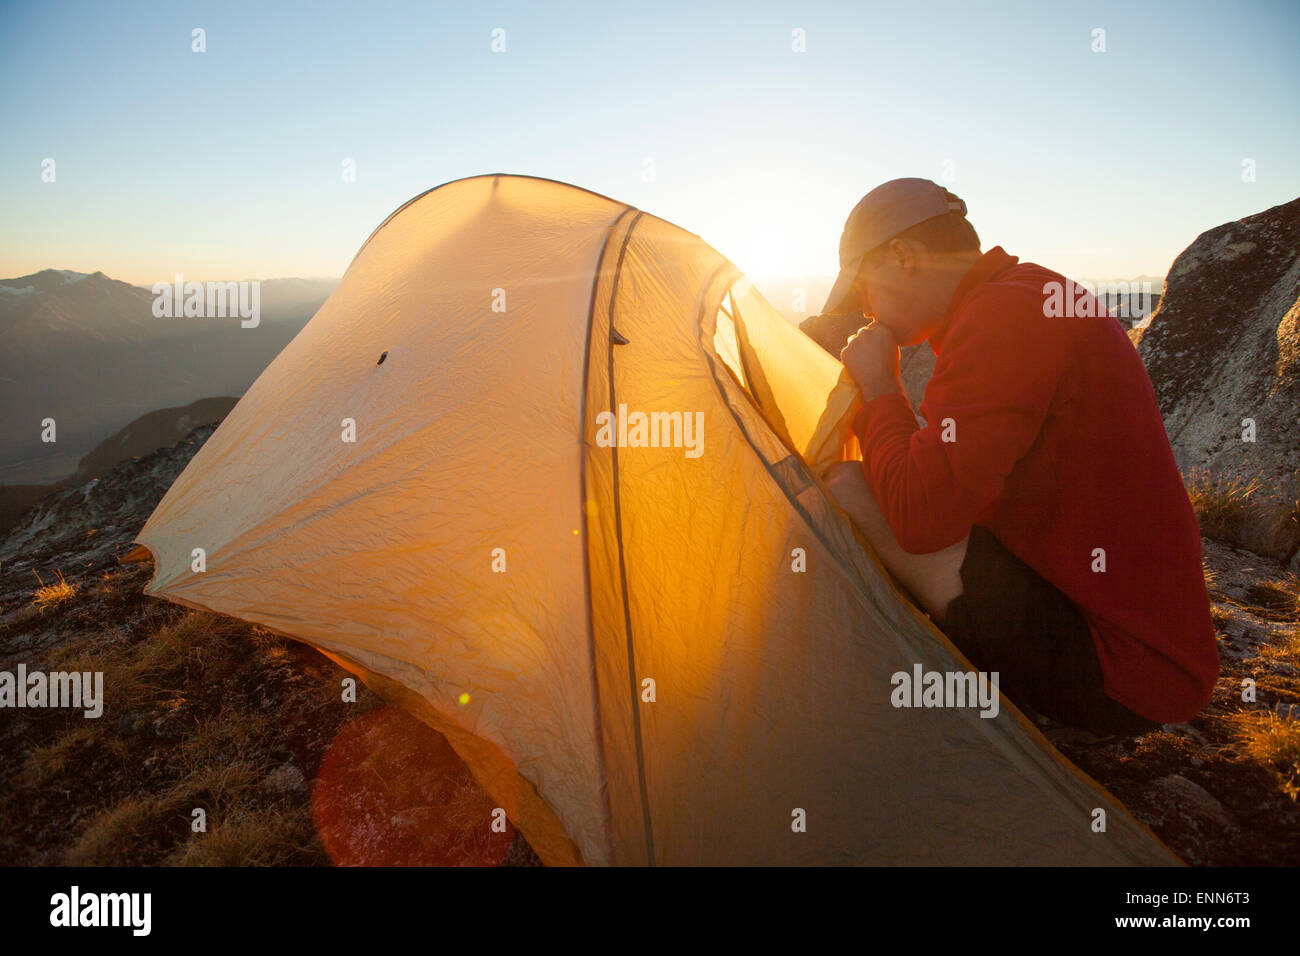 Un randonneur gonfle son matelas d'air alors qu'il campait sur le sommet du pic de saxifrage, Pemberton, Canada. Banque D'Images